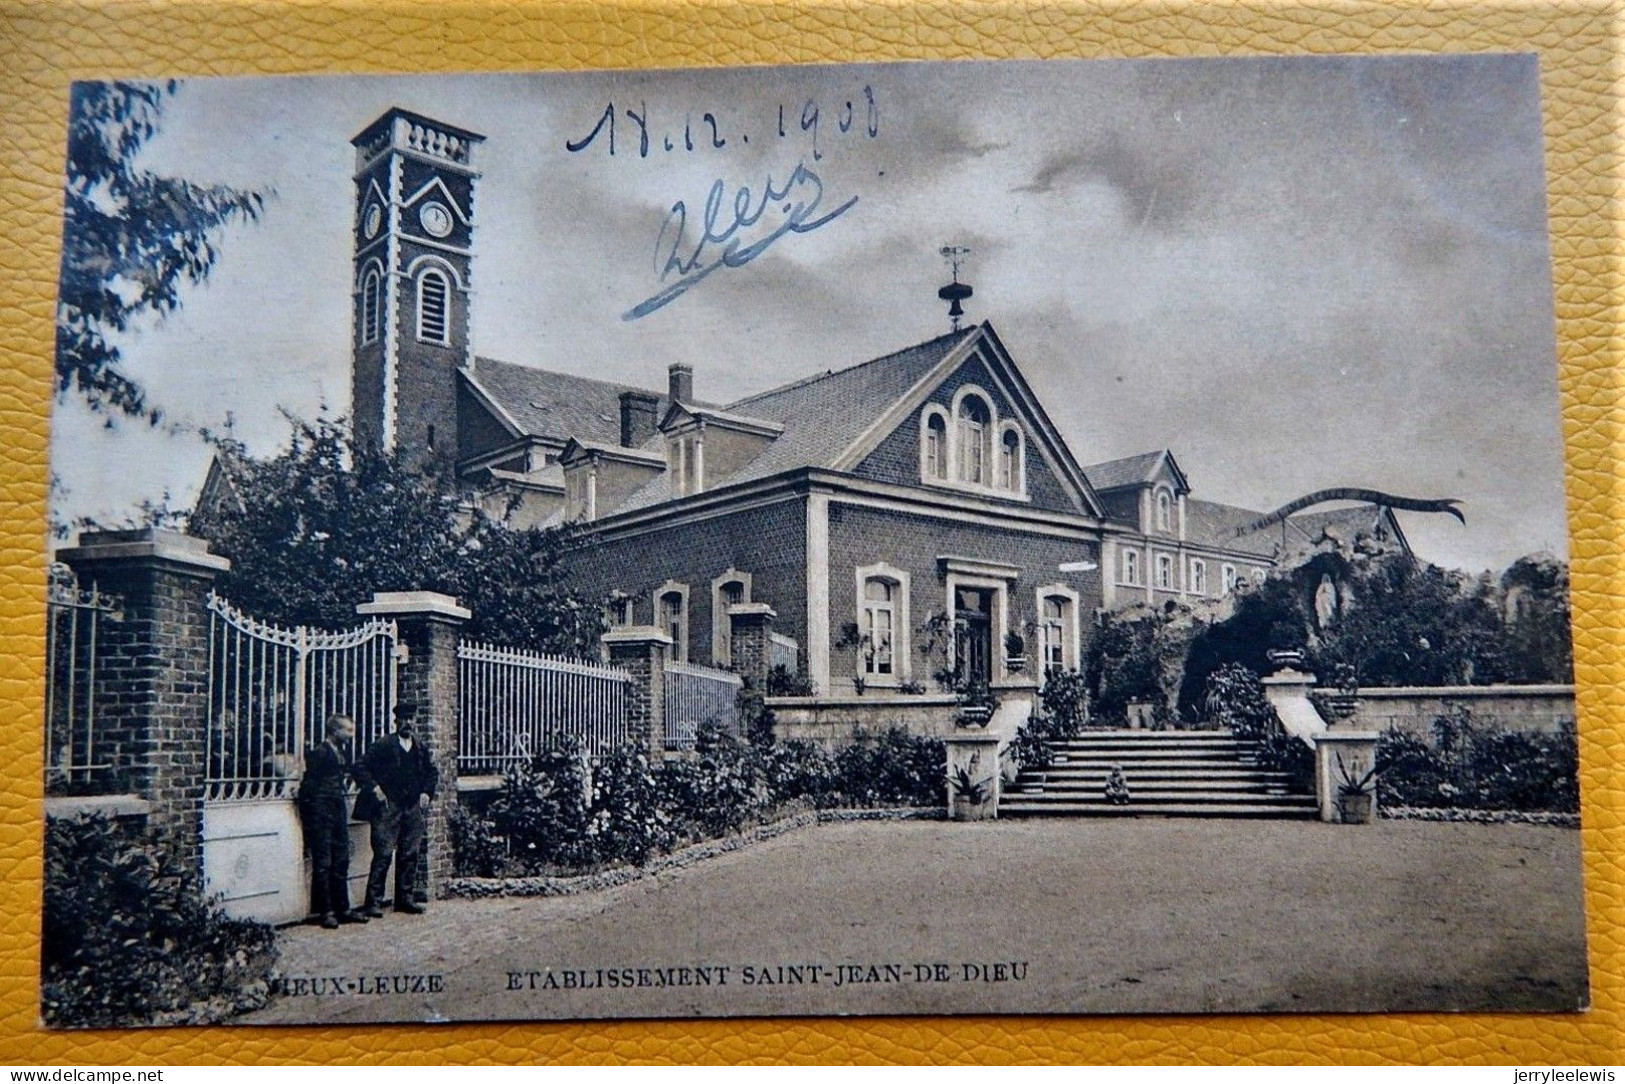 LEUZE-en-HAINAUT  -  Vieux Leuze -  Etablissement Saint Jean De Dieu  -  1908 - Leuze-en-Hainaut